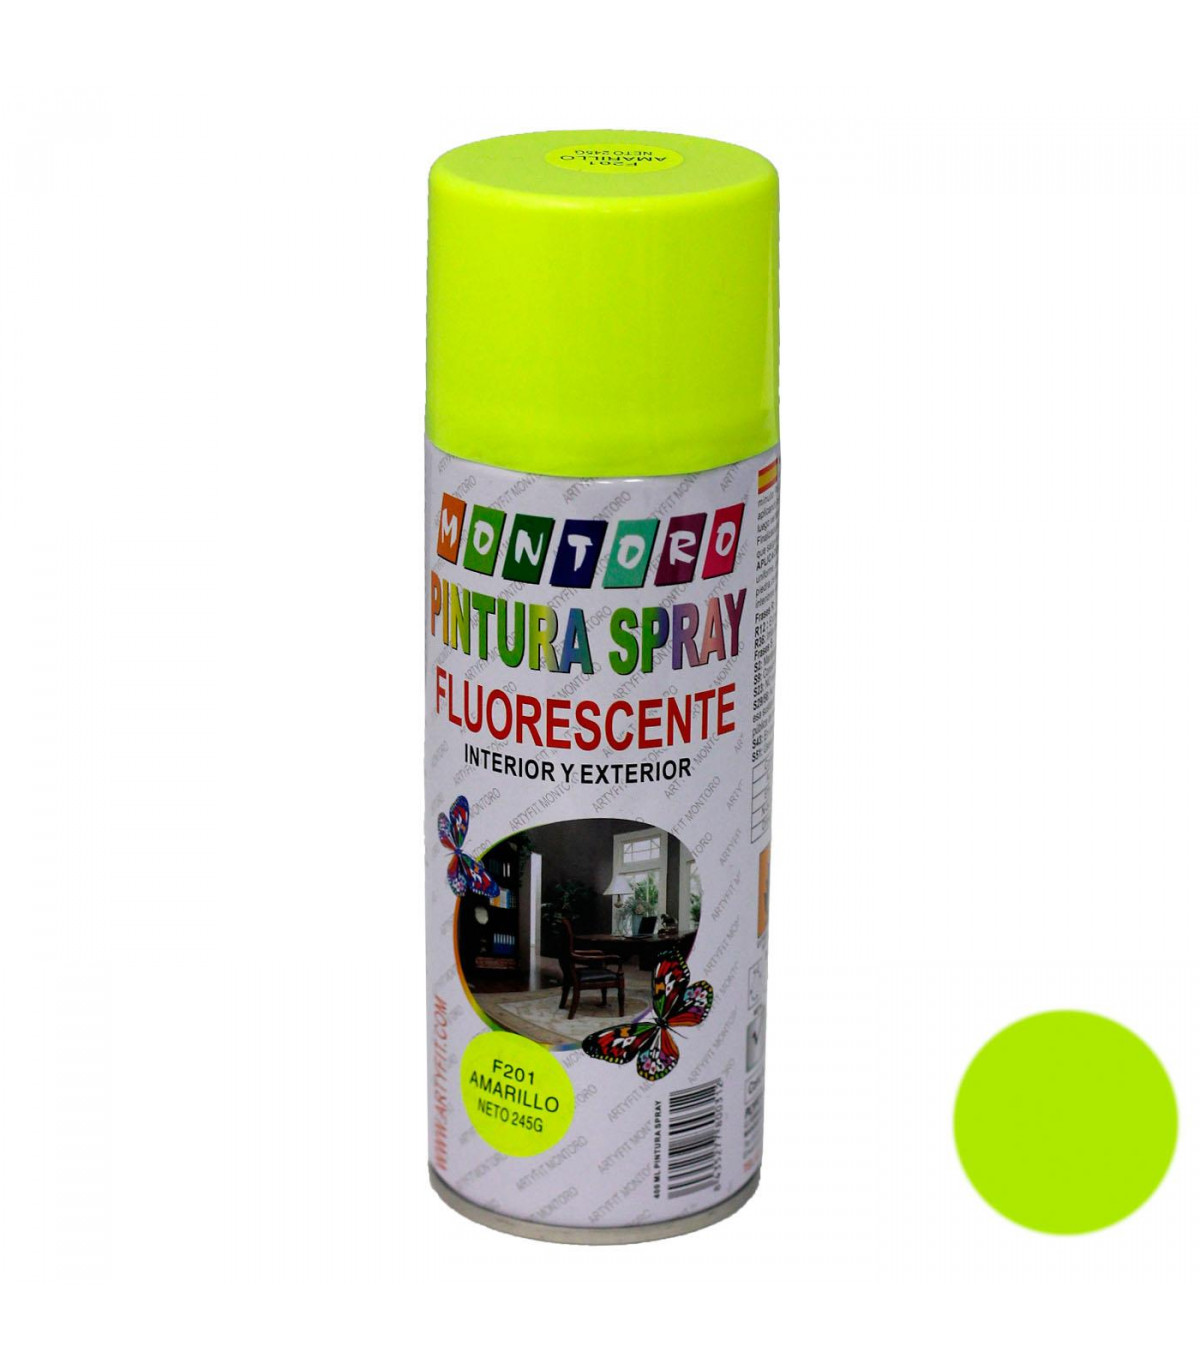 Montoro - Bote de pintura spray amarillo fluorescente F201 400 ml, para multitud de superficies de interior y exterior